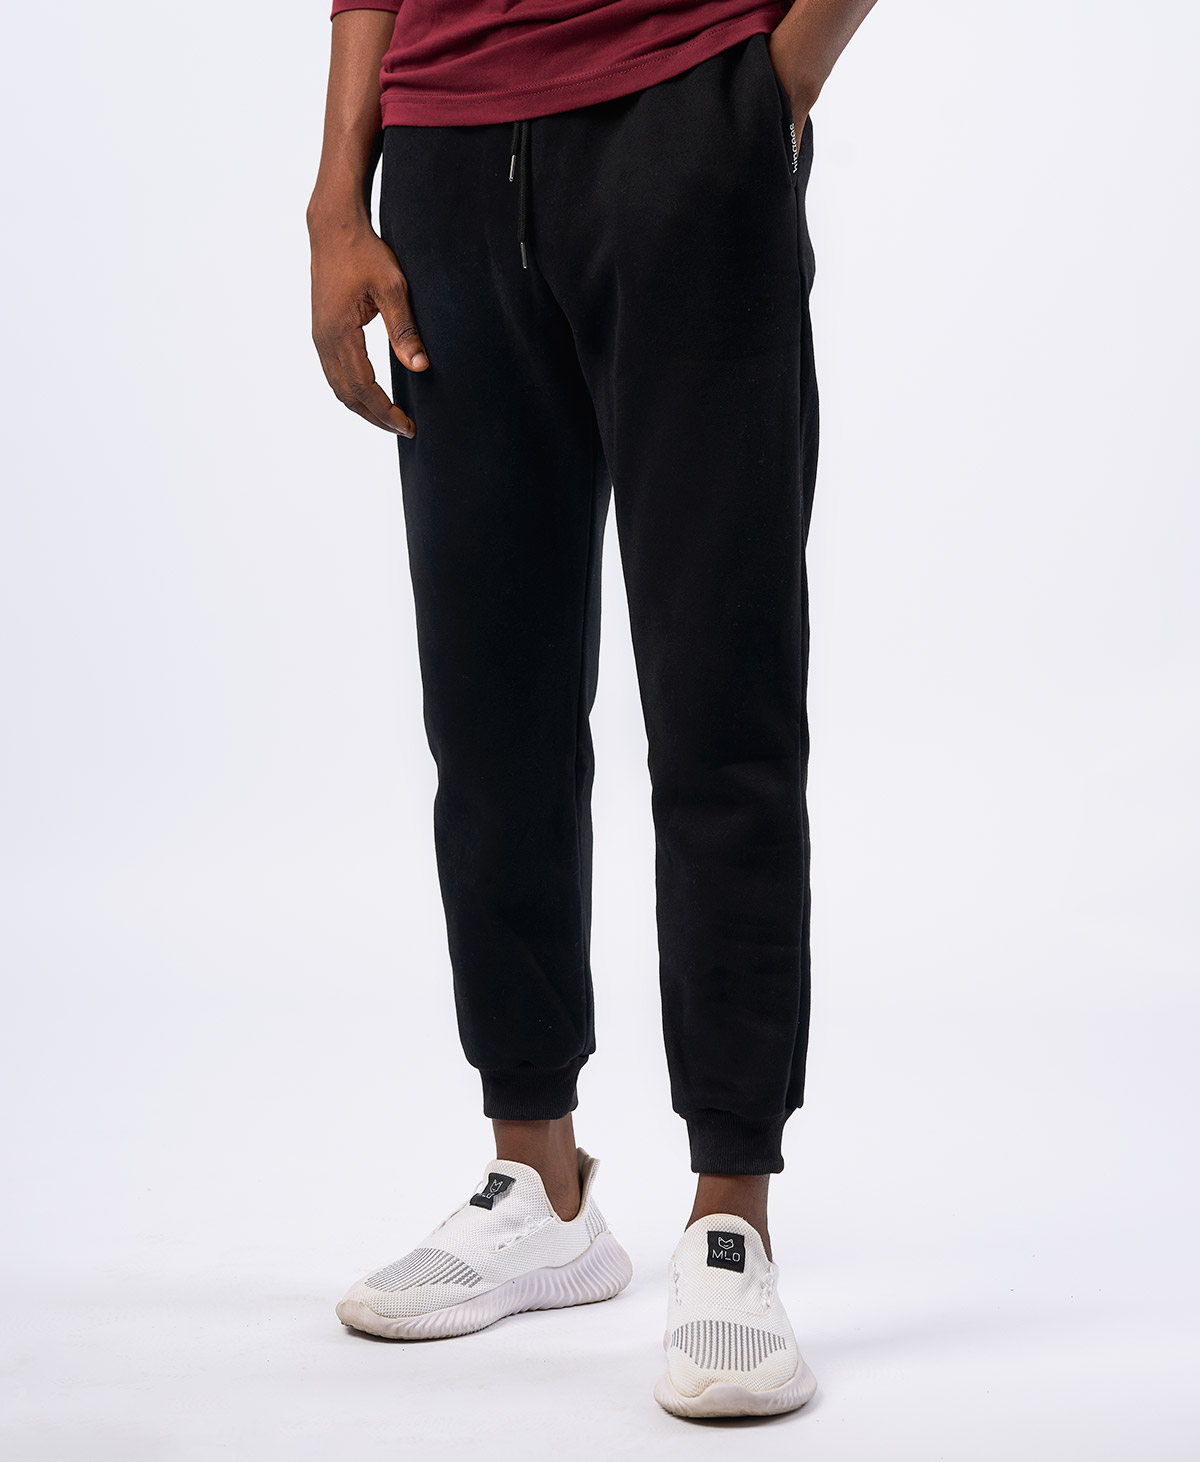 Black Joggers - Sweatpants (Regular Fit)